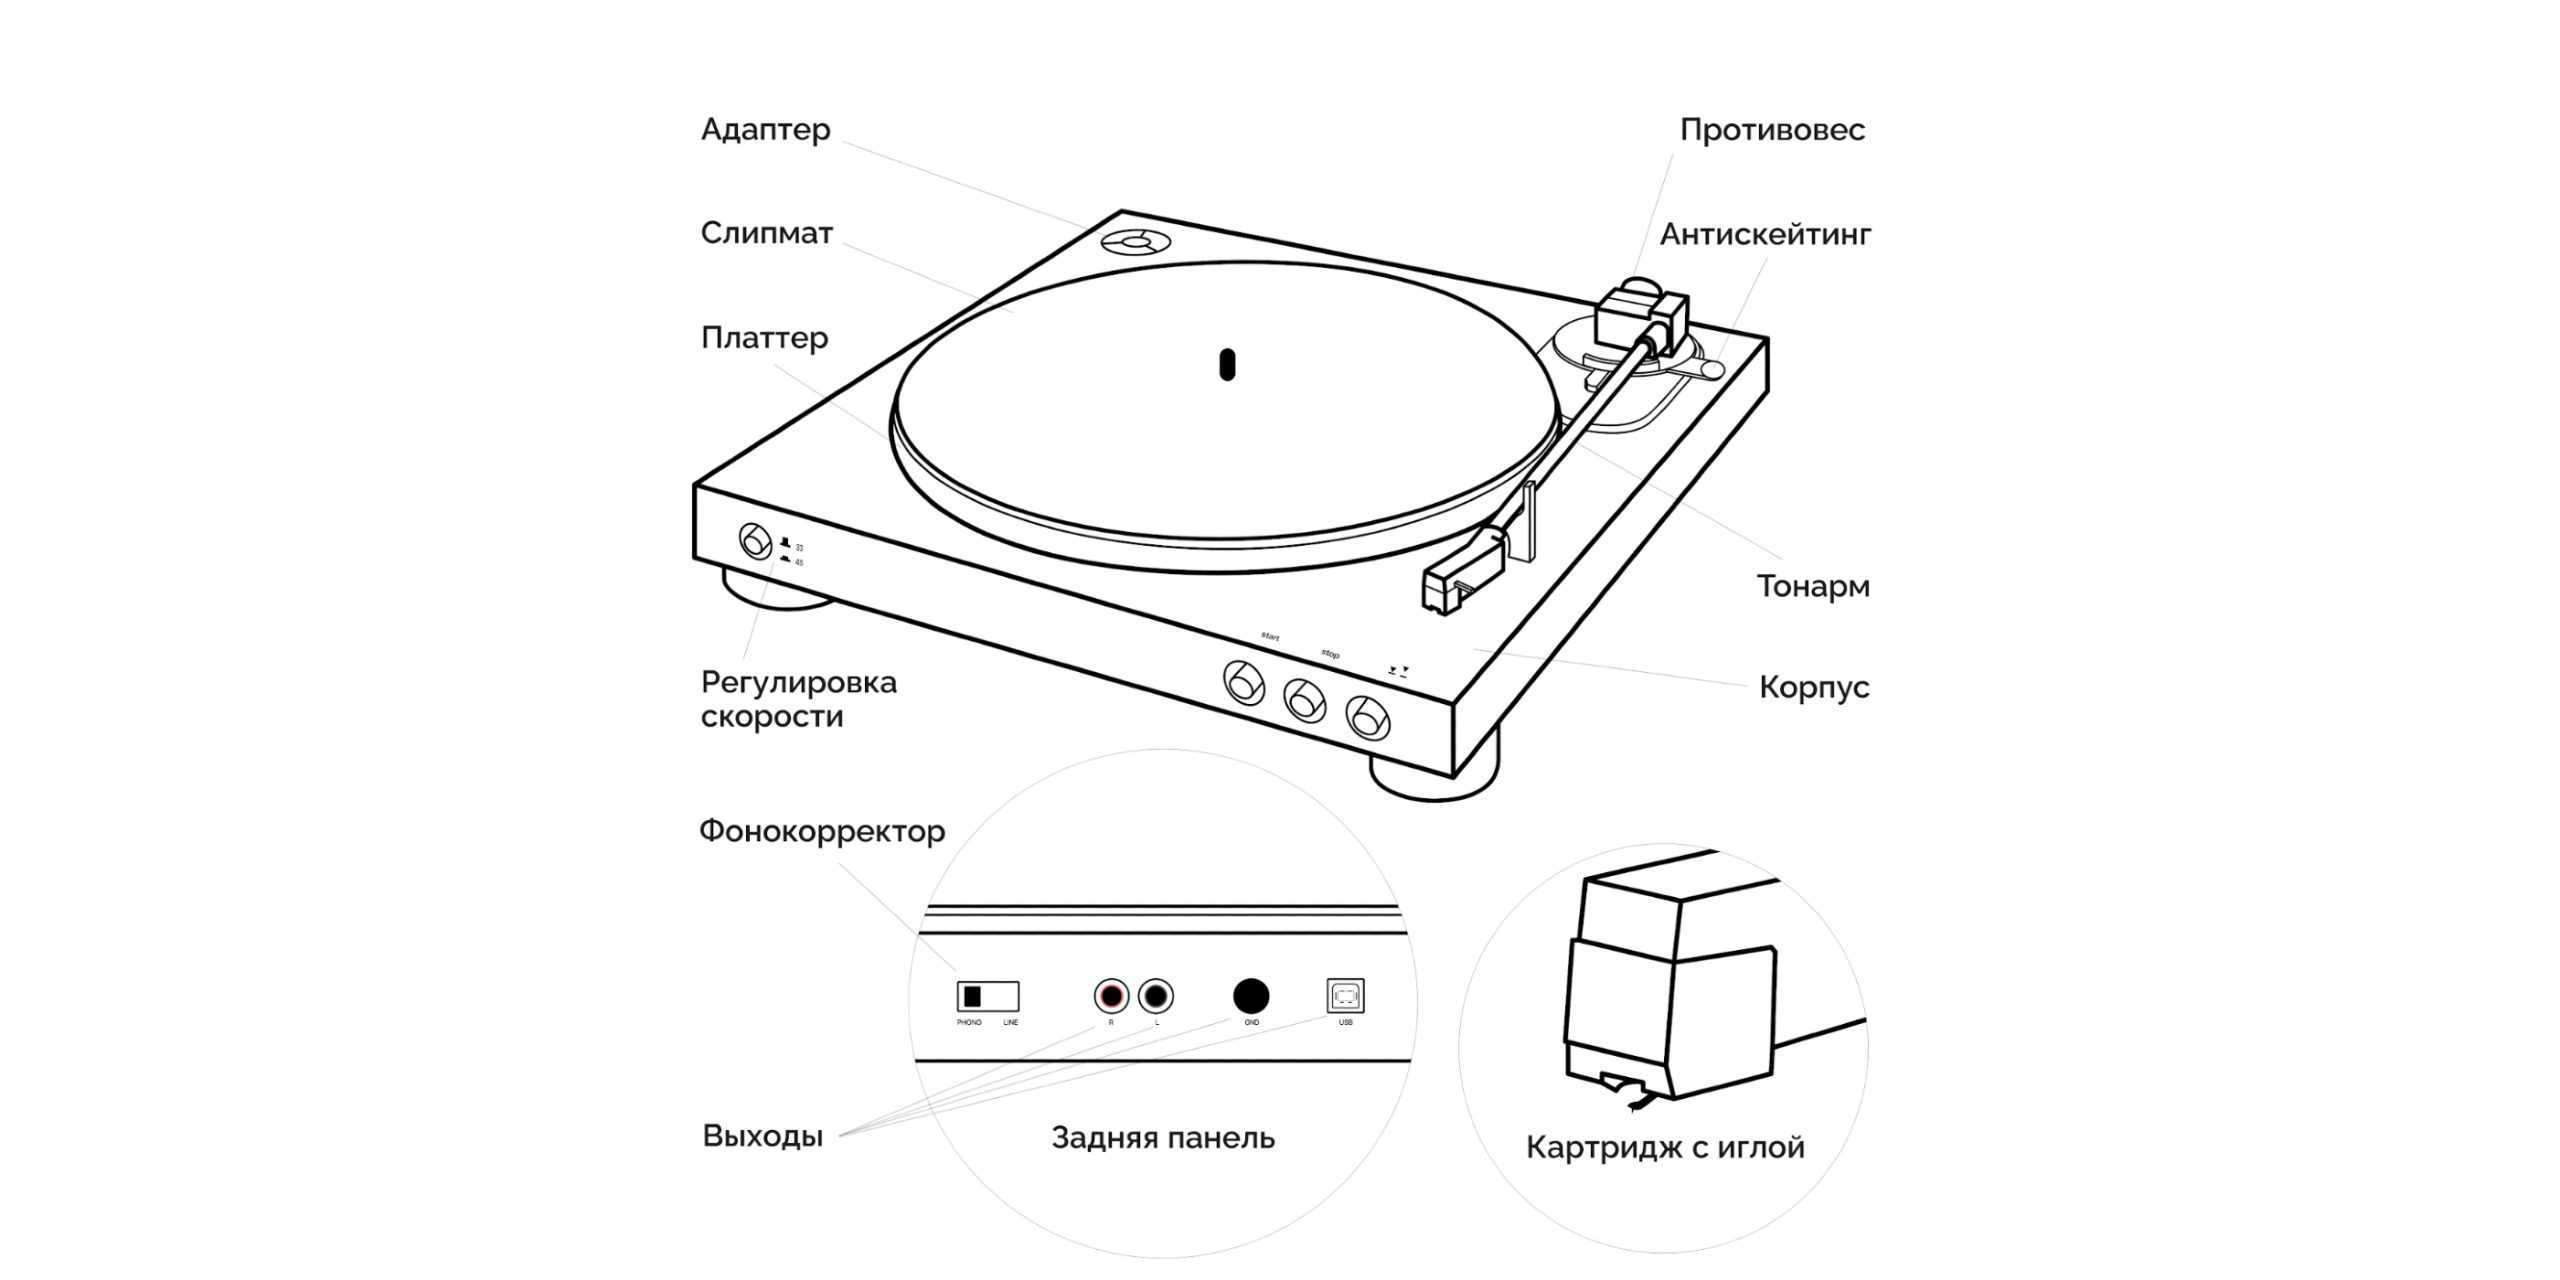 Как слушать виниловые пластинки в 2k21 | appleinsider.ru